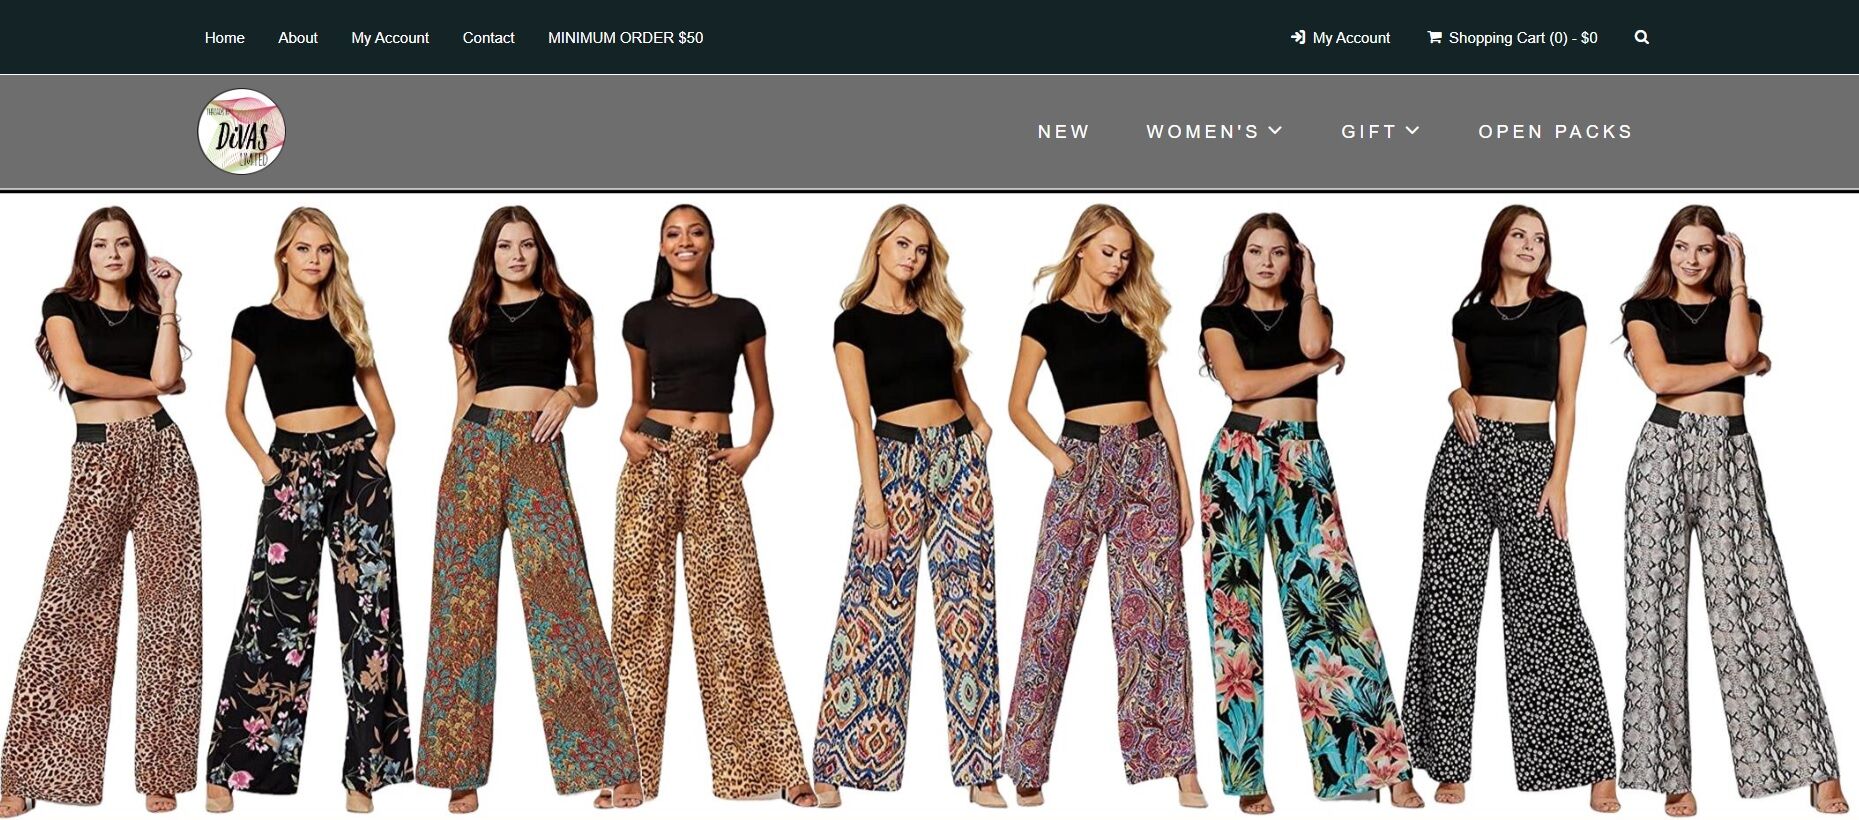 divas-limited-wholesale-clothing-women